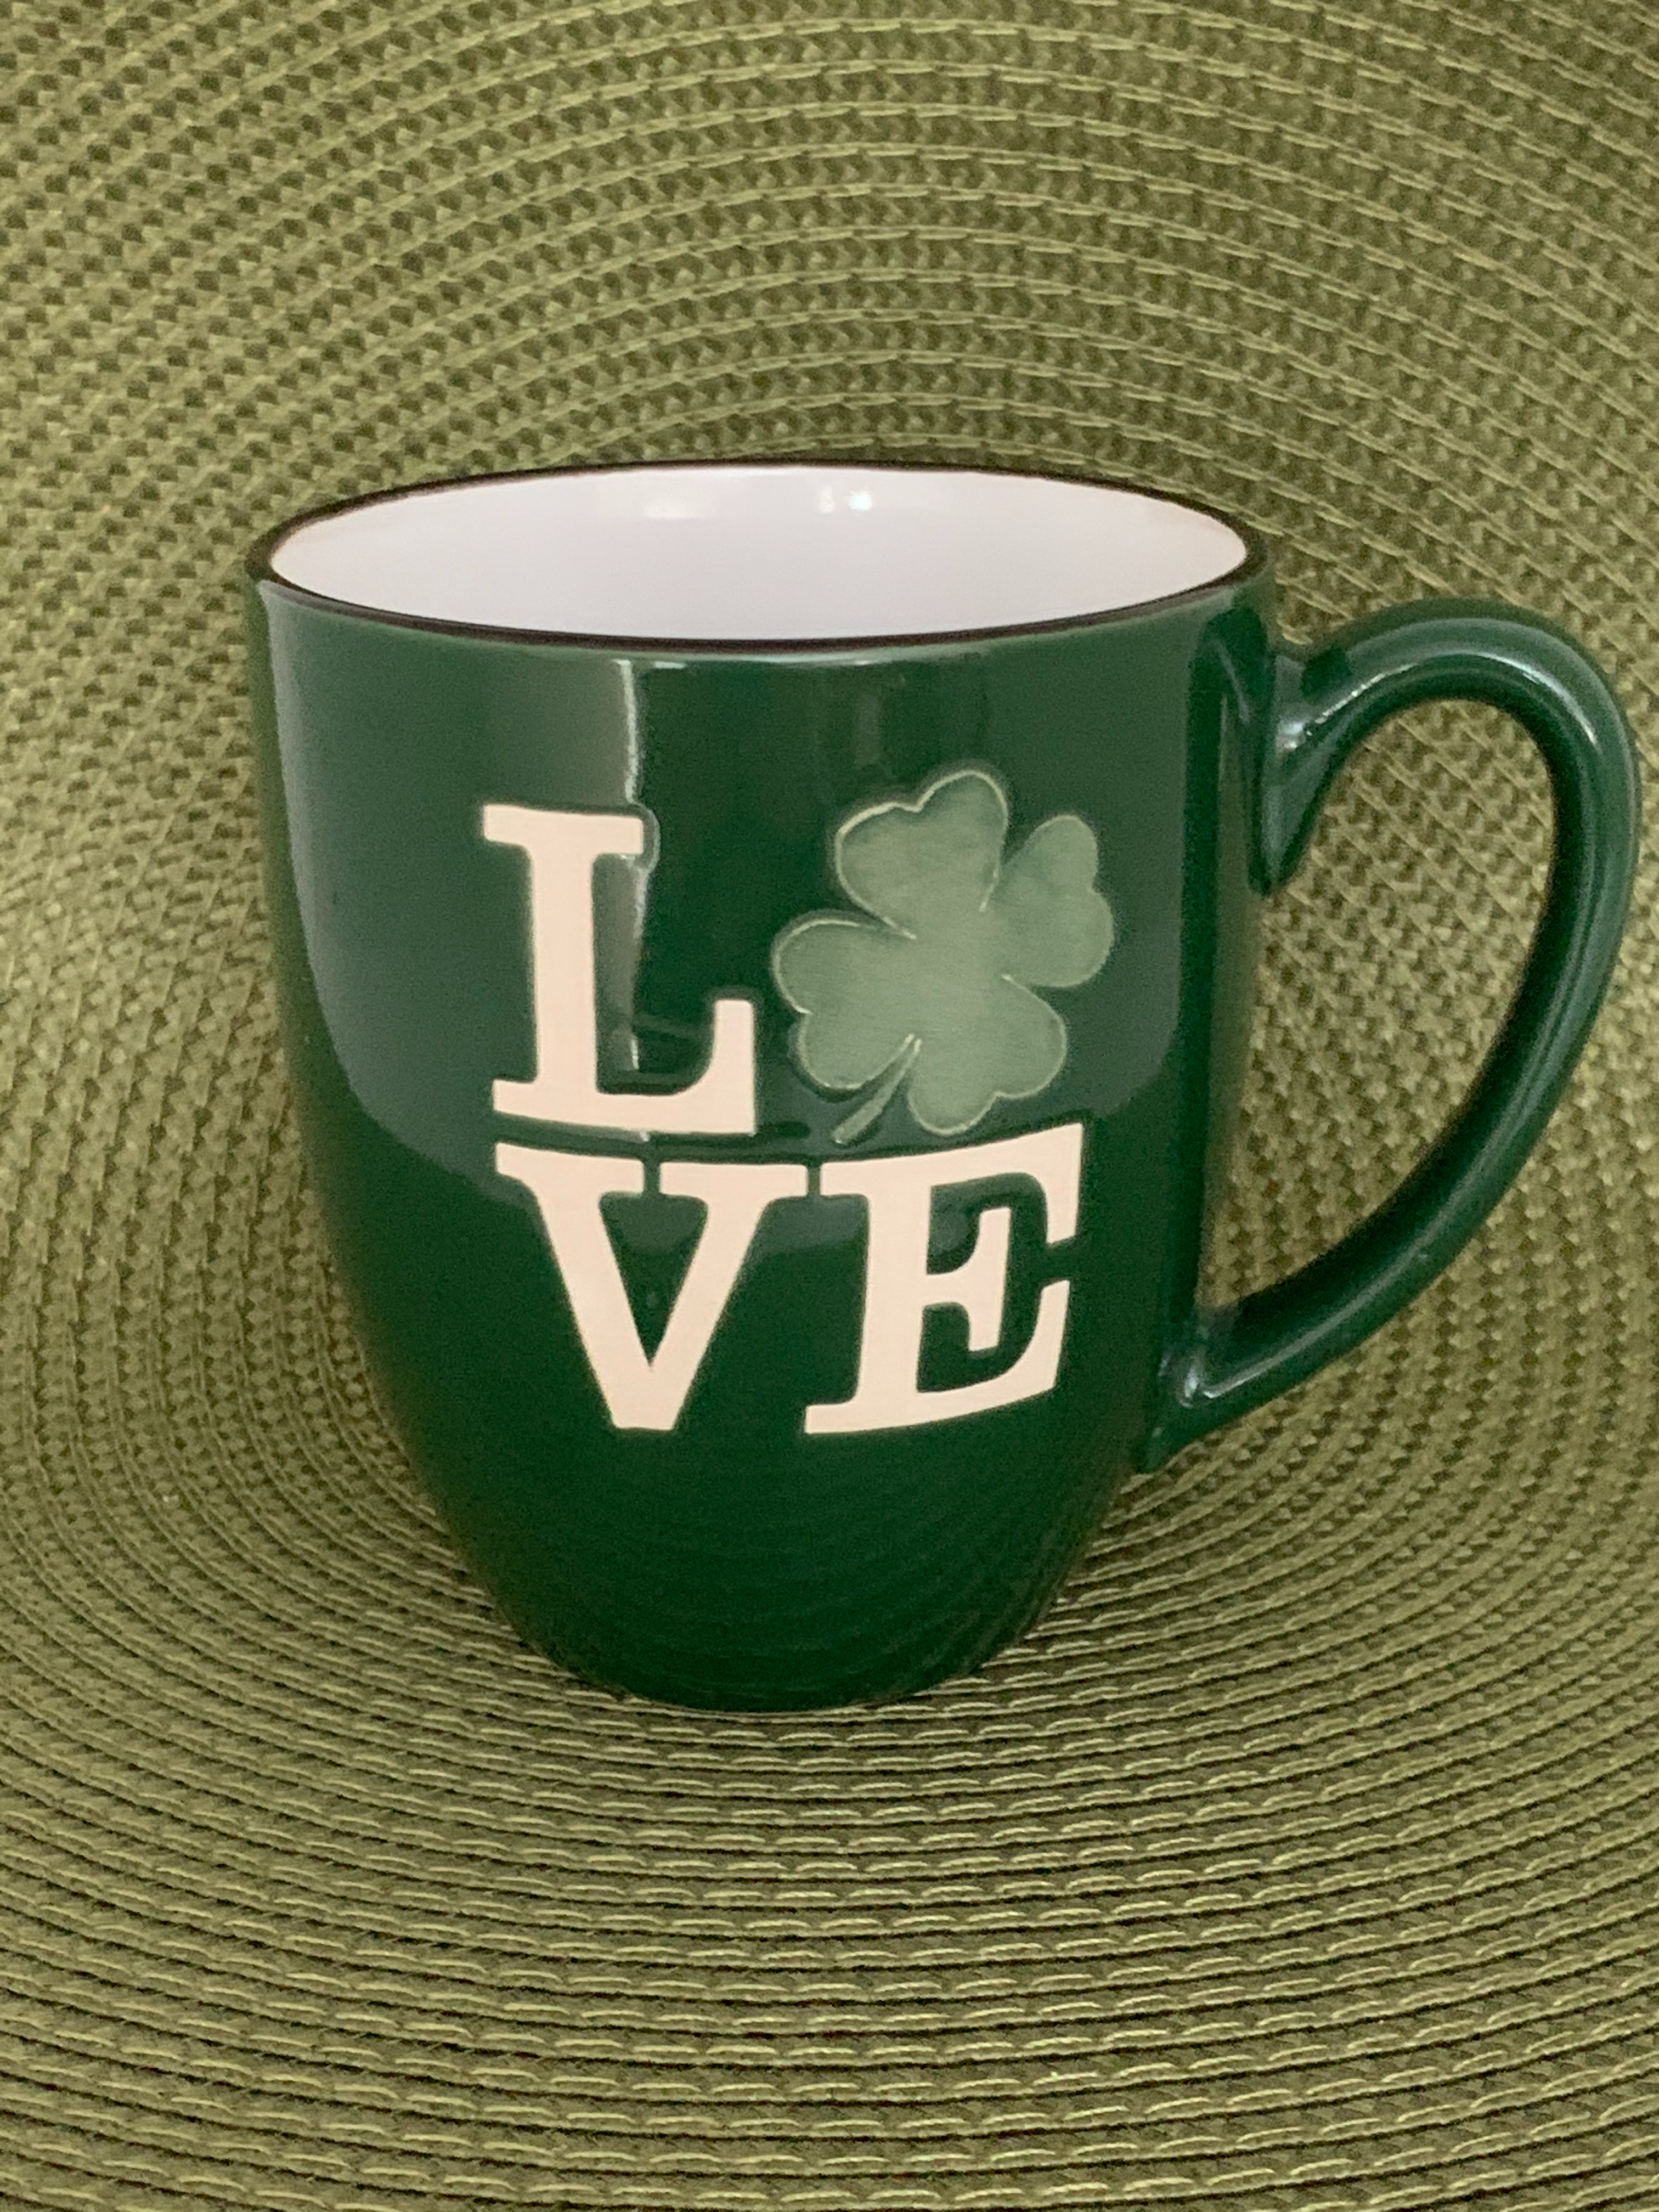 Kiss Me, I'm Catholic - St. Patrick of Ireland Mug